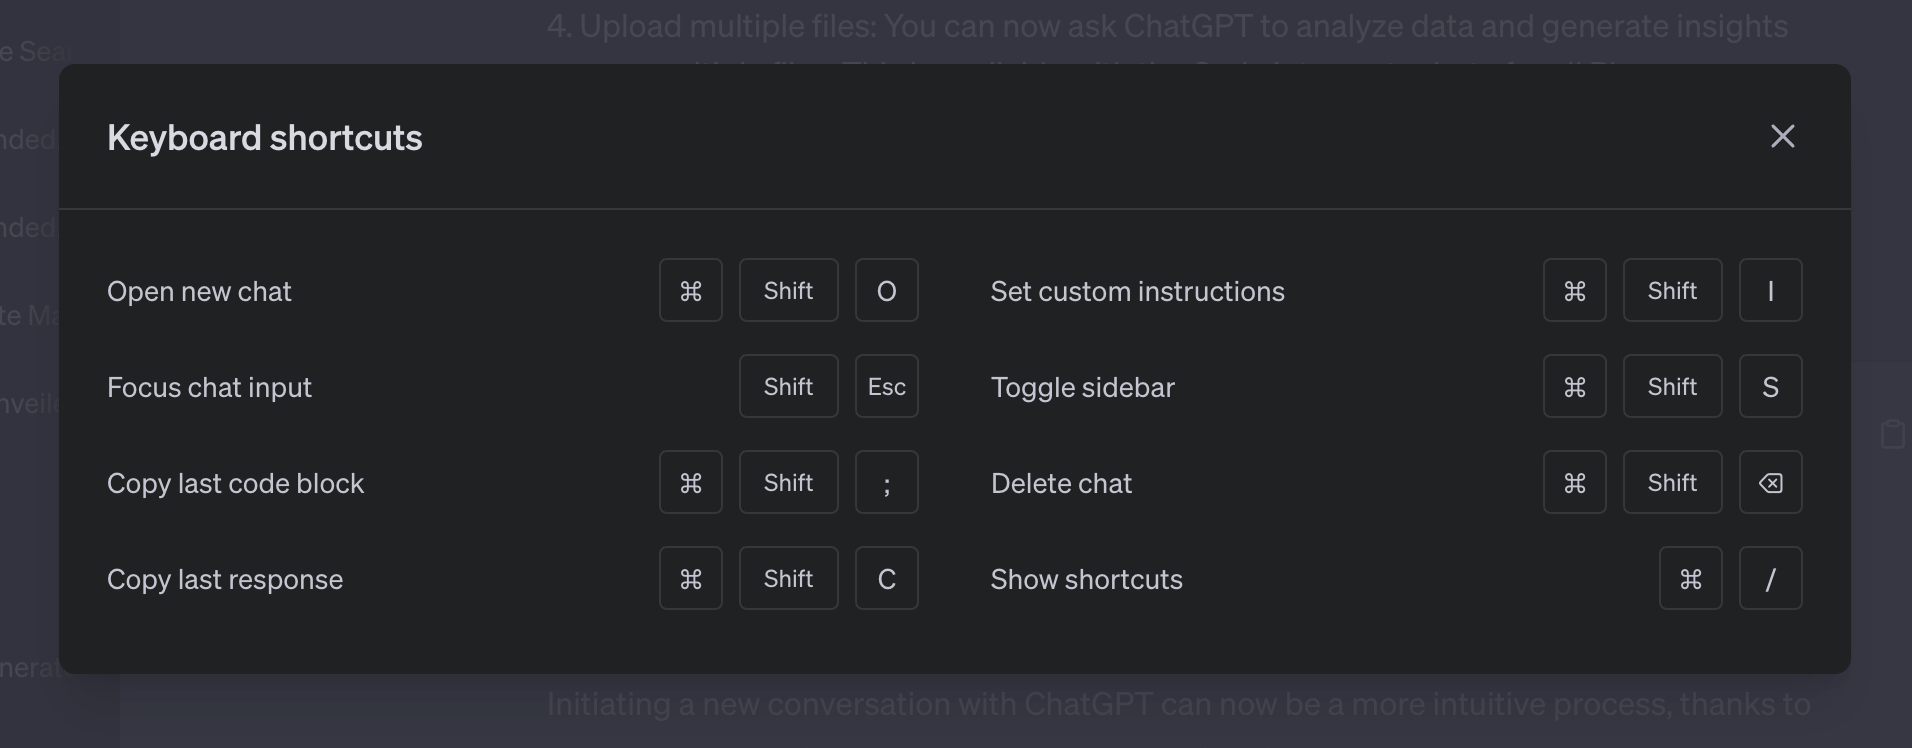 6 новых функций ChatGPT, включая подсказки и загрузку файлов